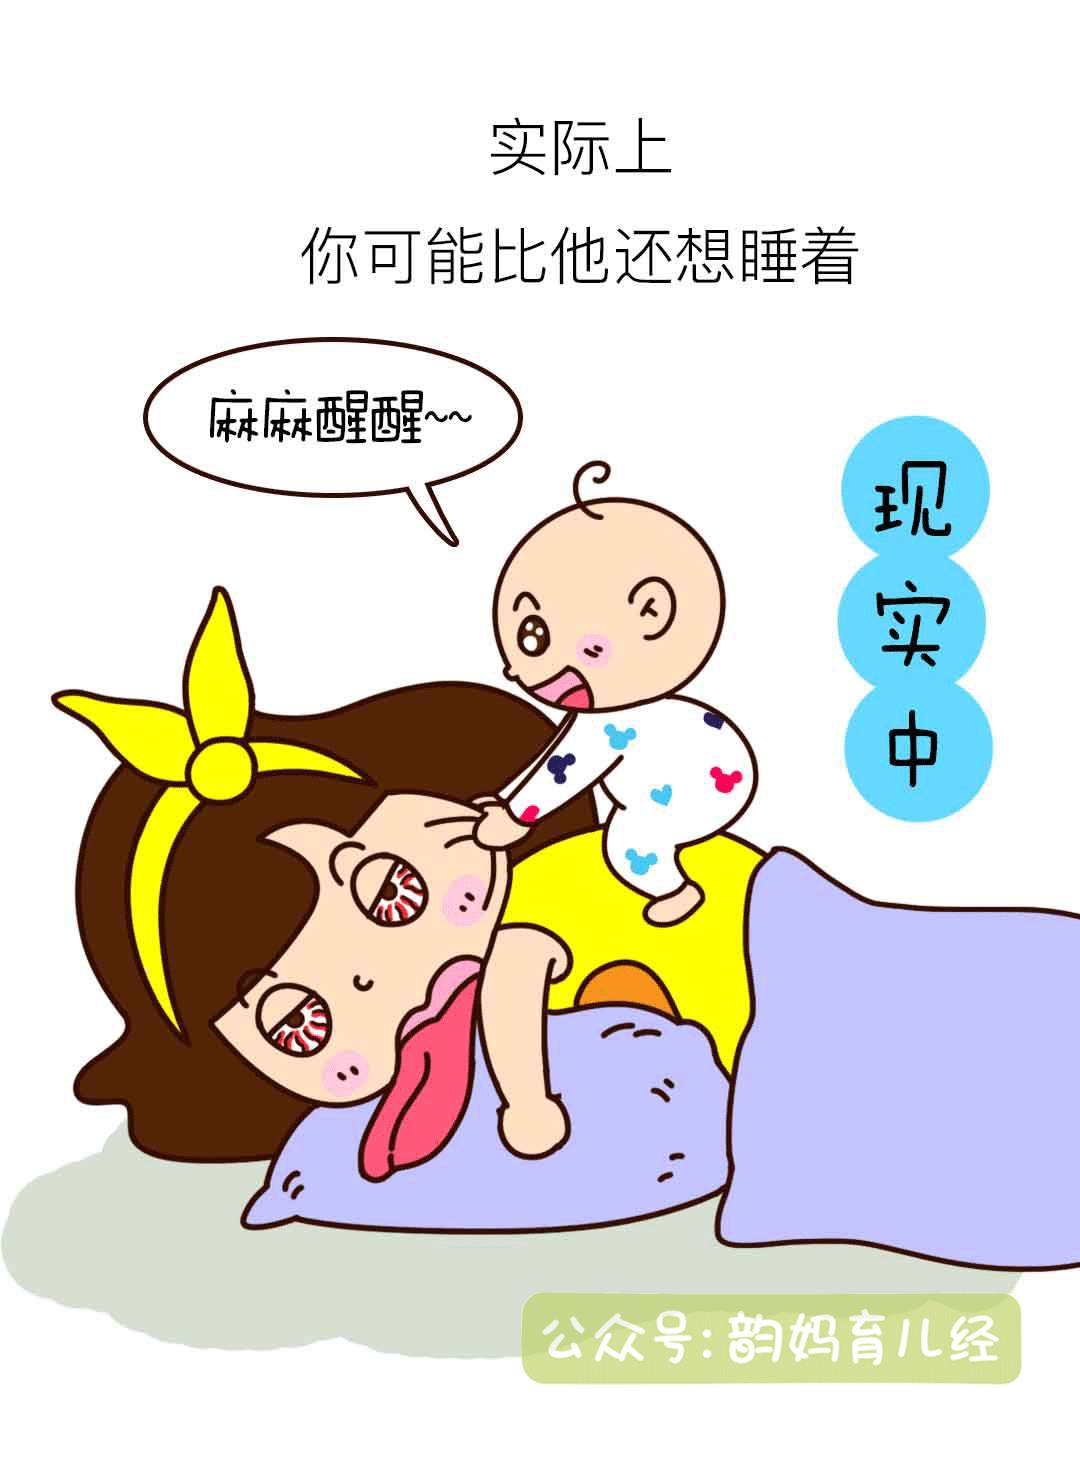 韵妈漫画:养娃很现实,当妈请慎重!